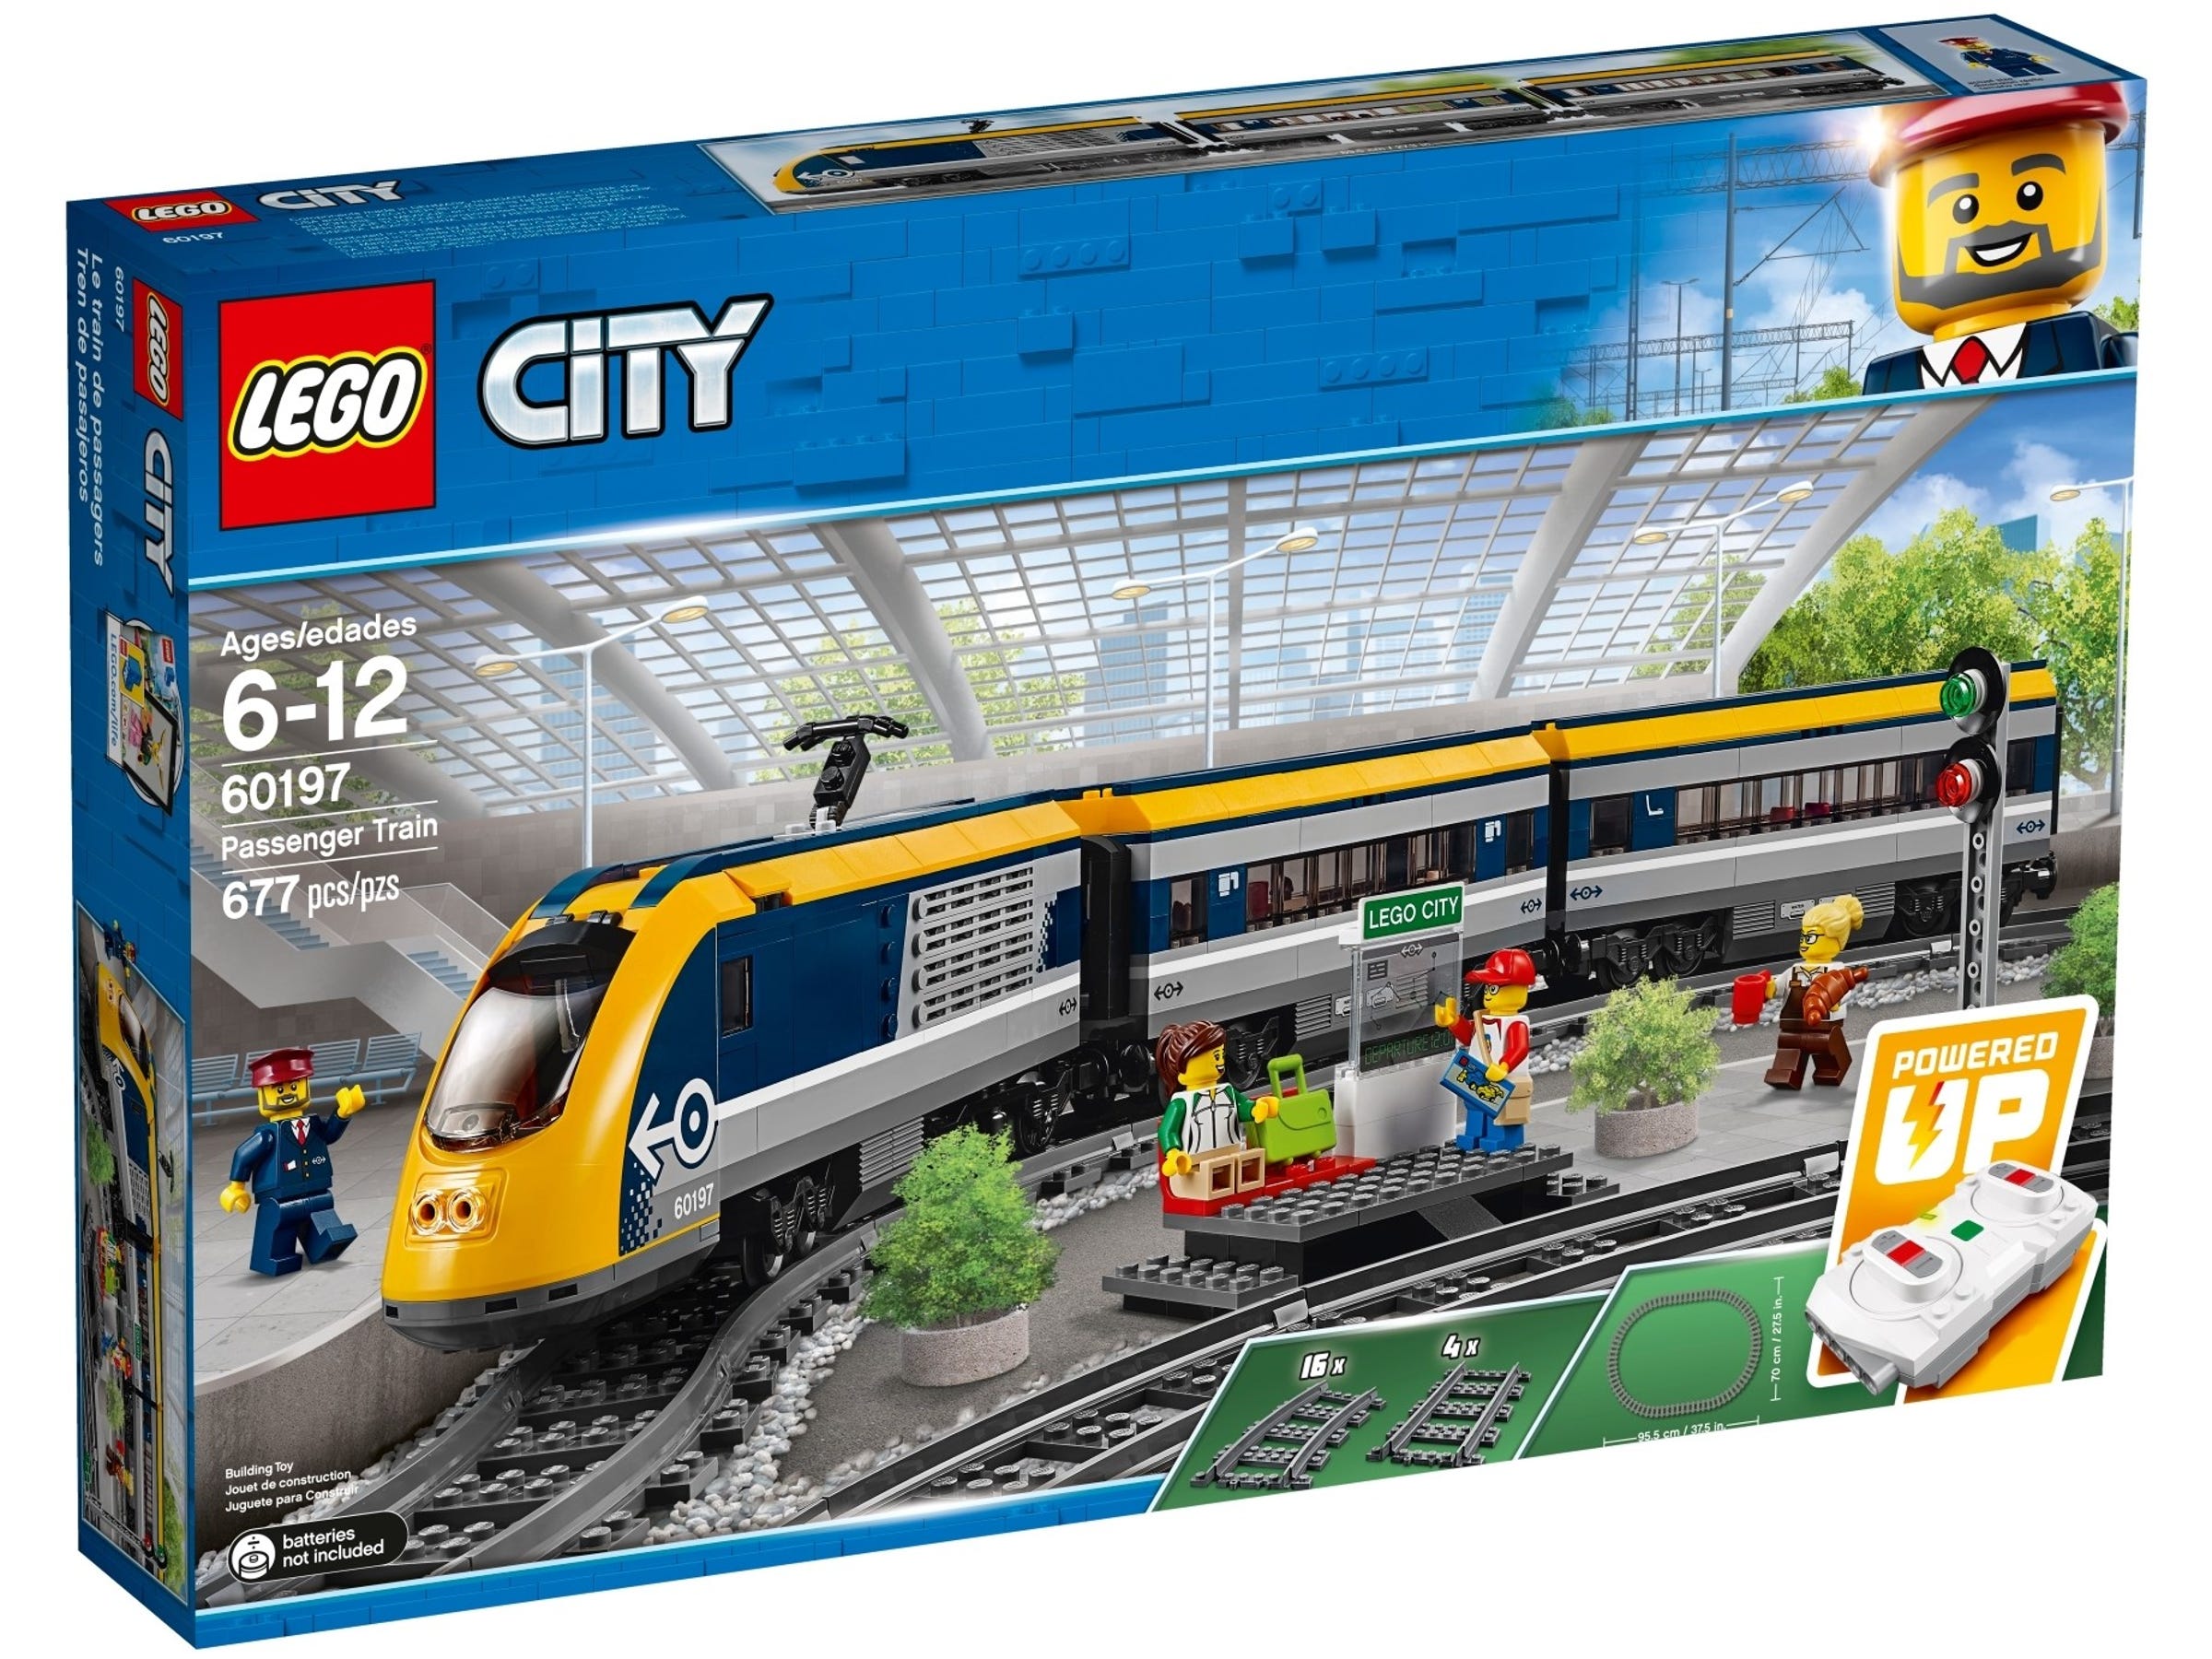 LEGO City Personenzug (60197) - im GOLDSTIEN.SHOP verfügbar mit Gratisversand ab Schweizer Lager! (5702016109788)